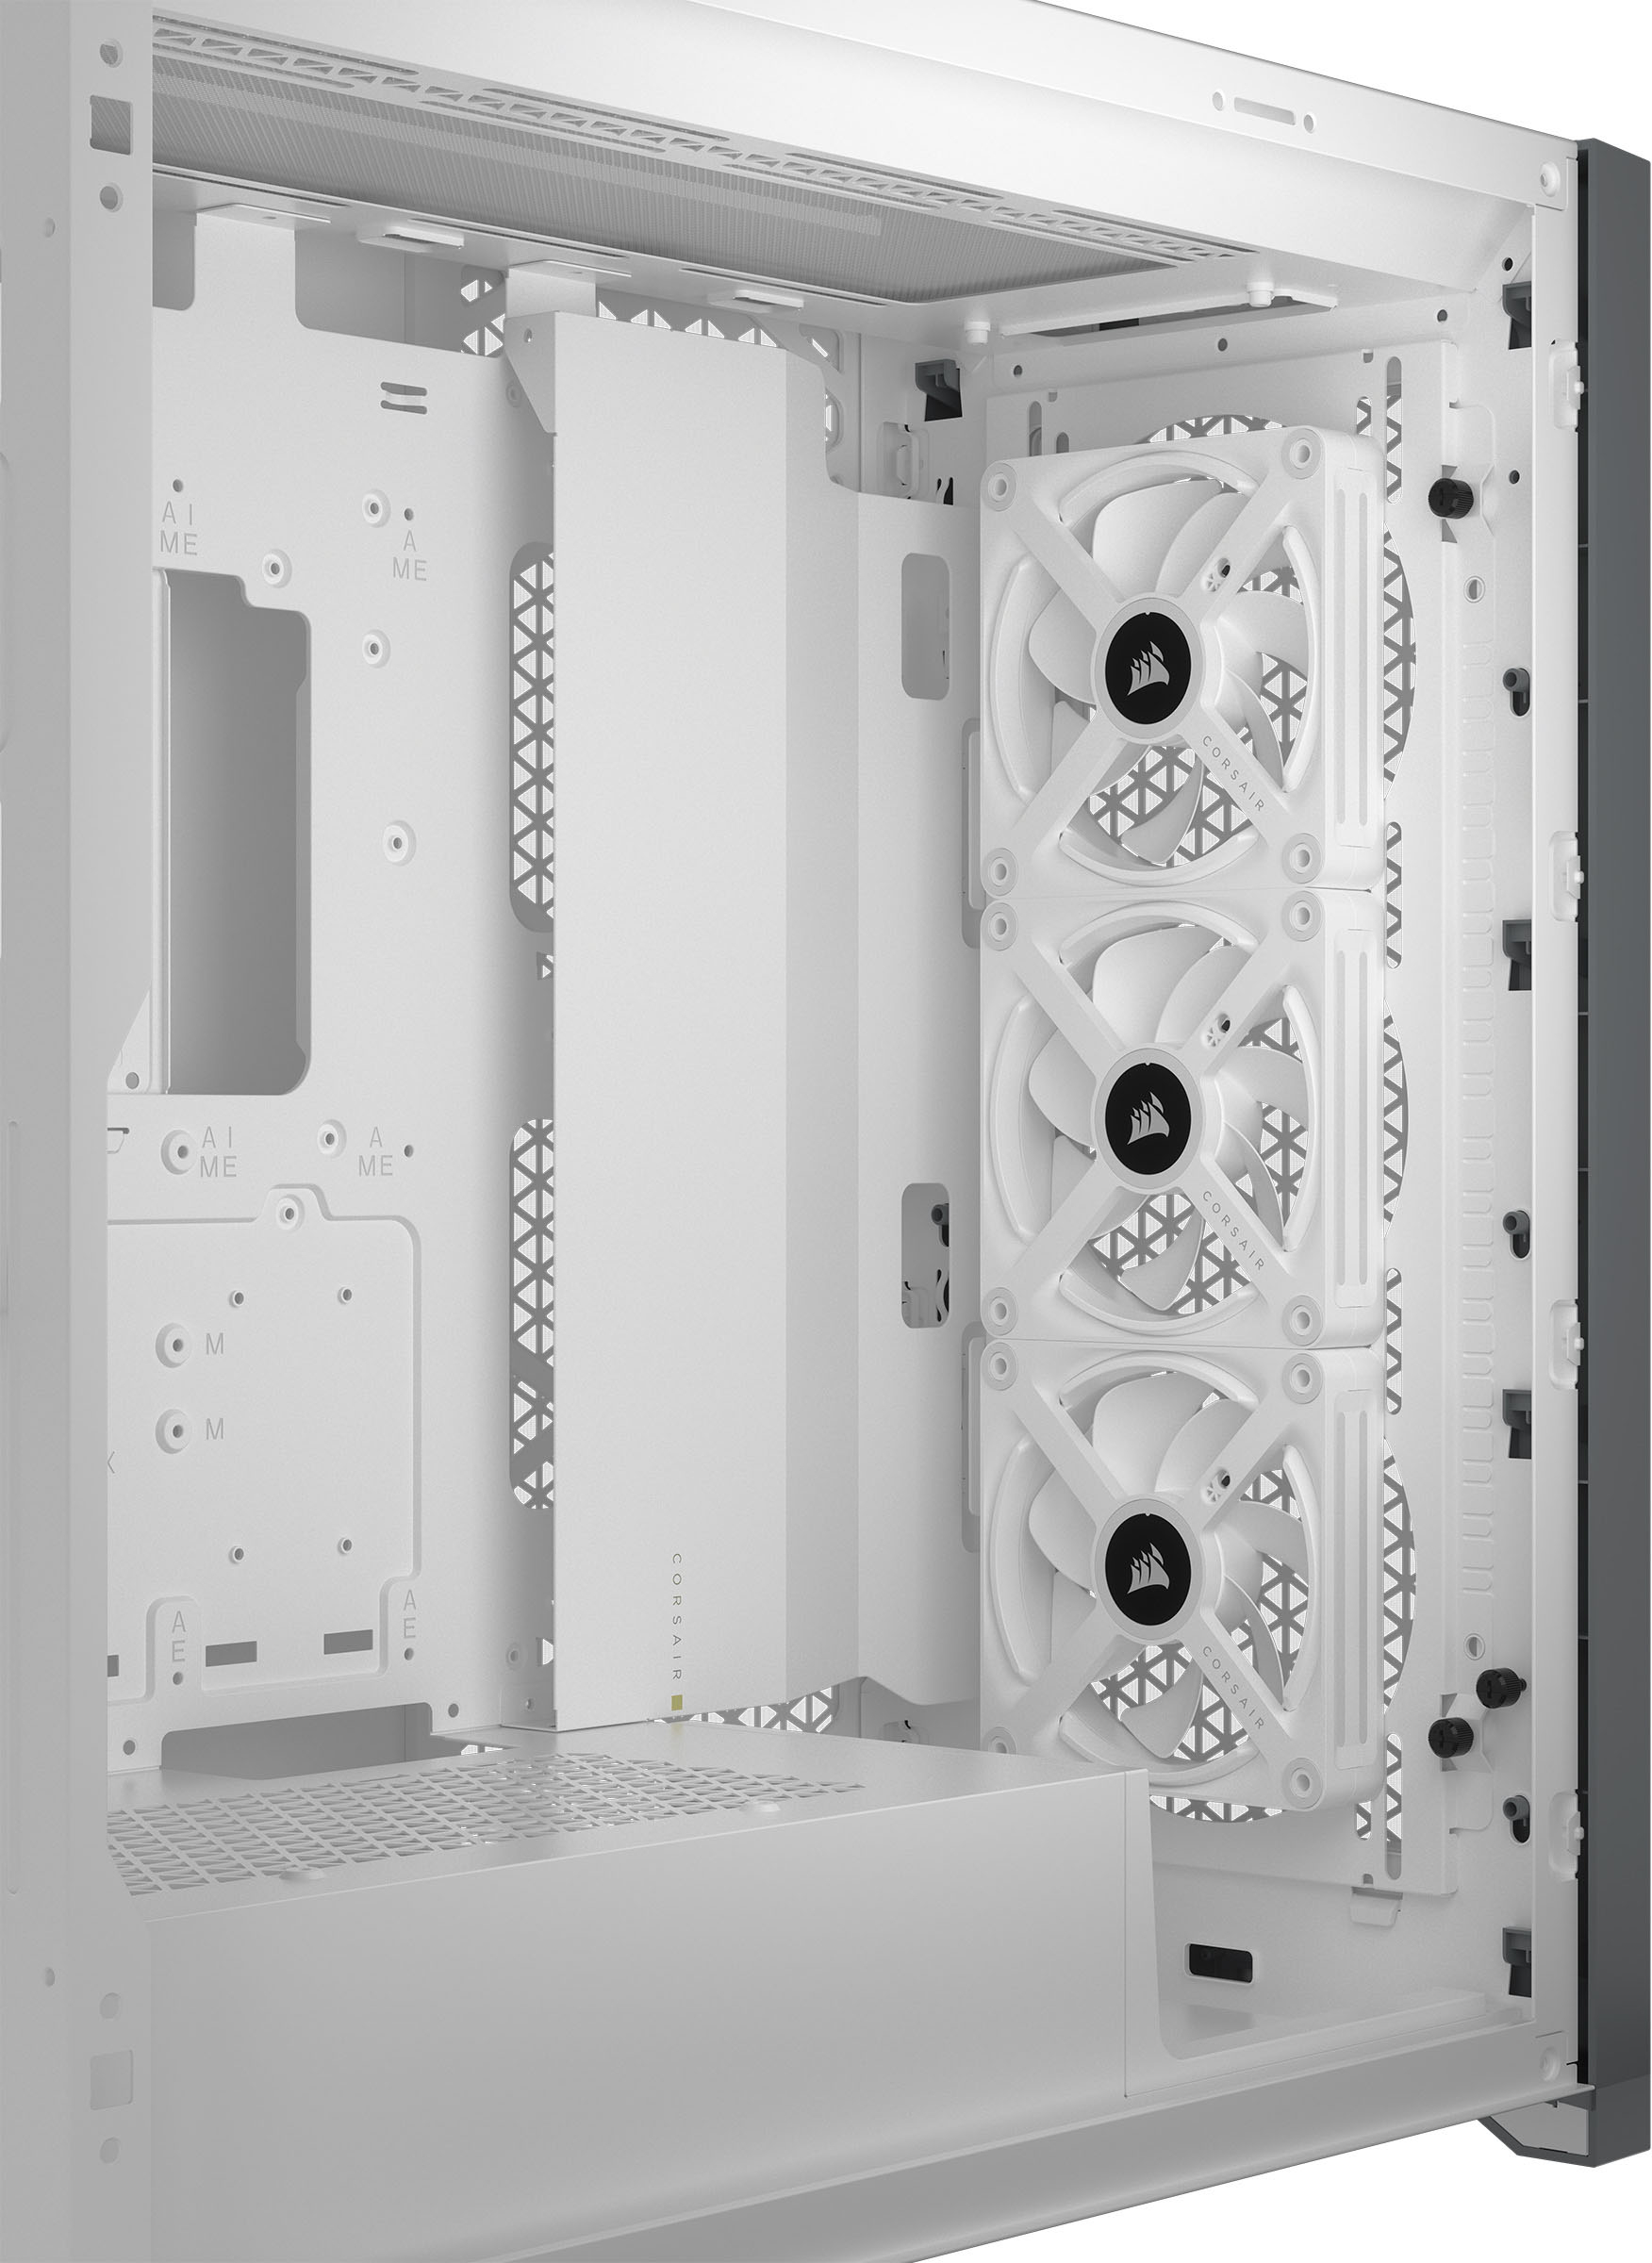 Kit d'extension ventilateur PWM PC 120 mm iCUE LINK QX120 RGB - Blanc 